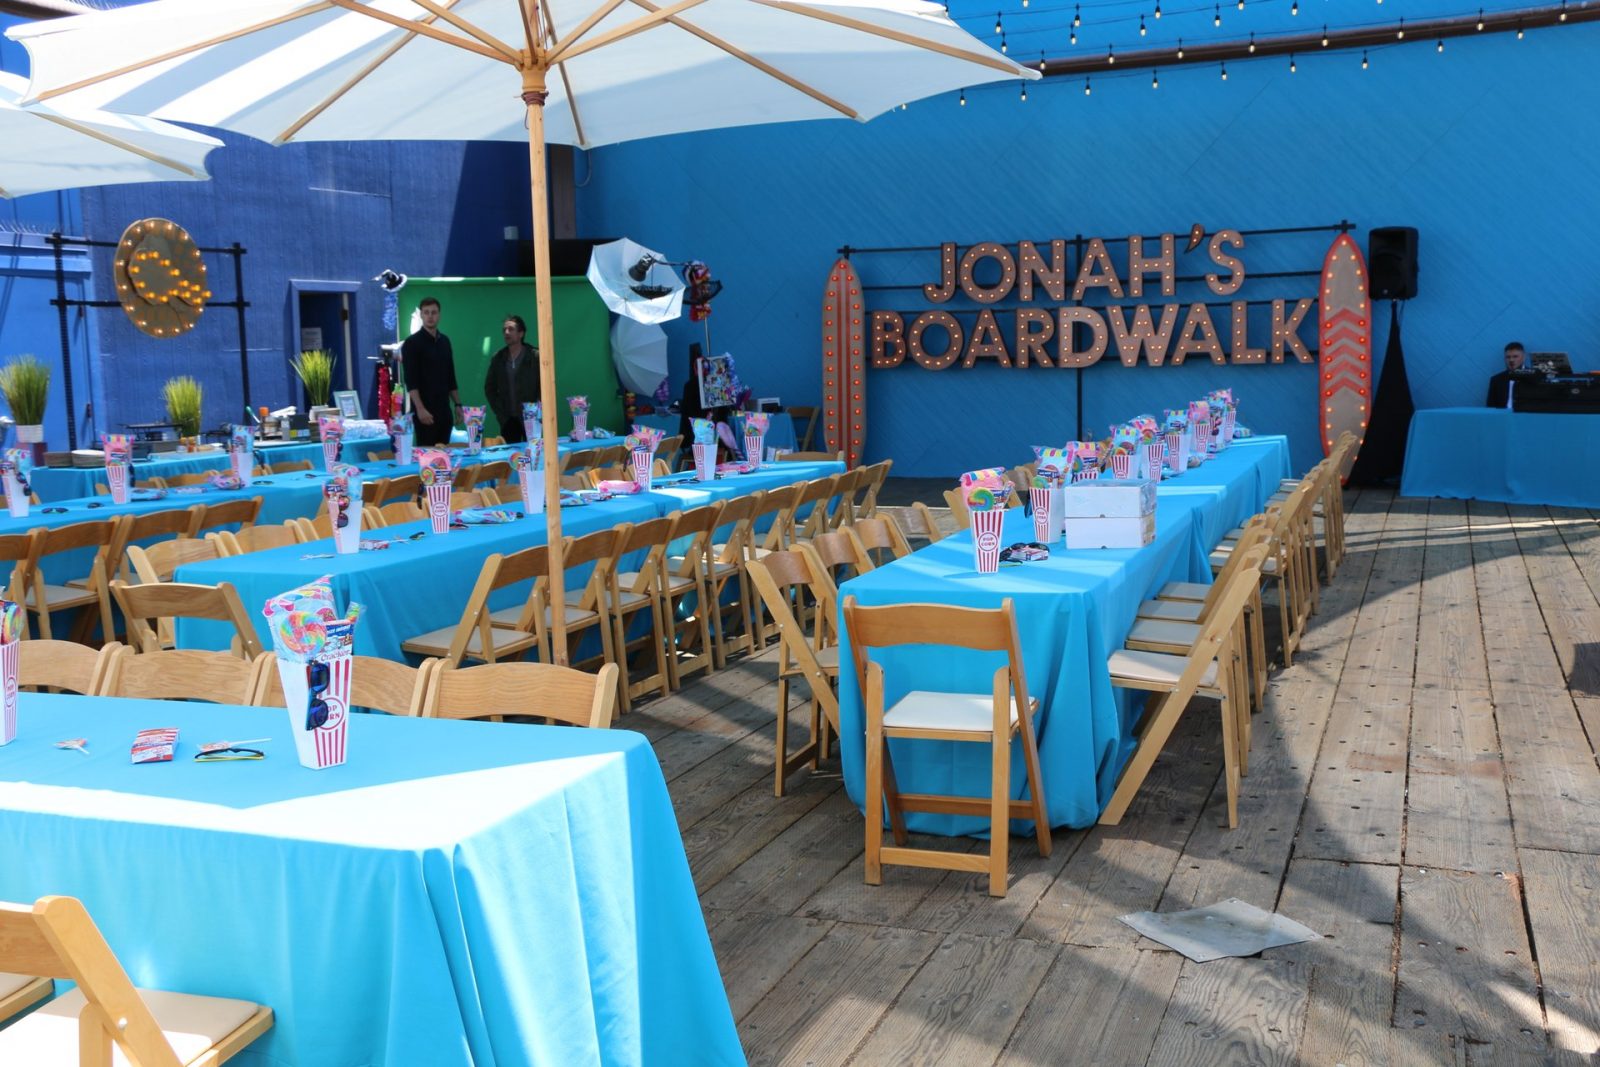 Jonahs Boardwalk in the Seaside Pavilion